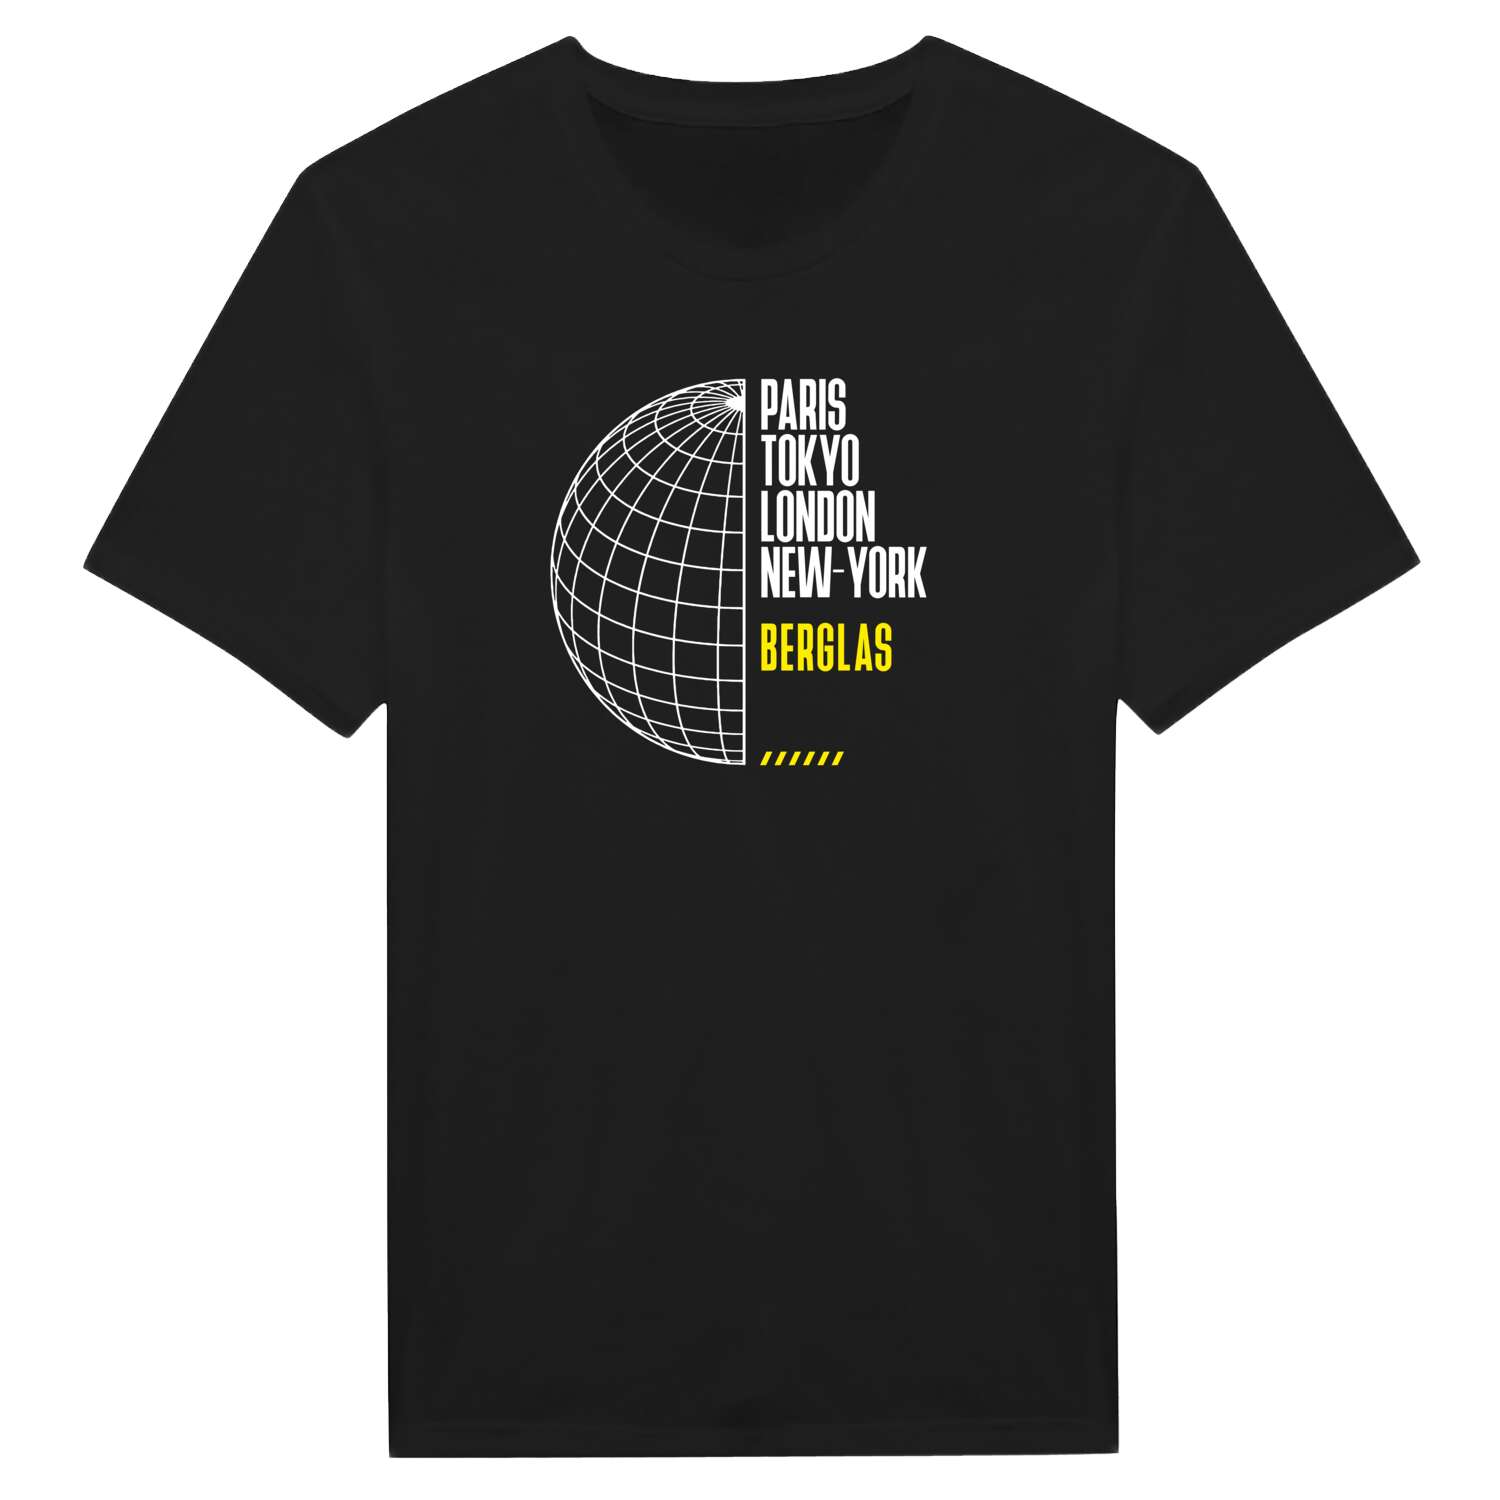 Berglas T-Shirt »Paris Tokyo London«